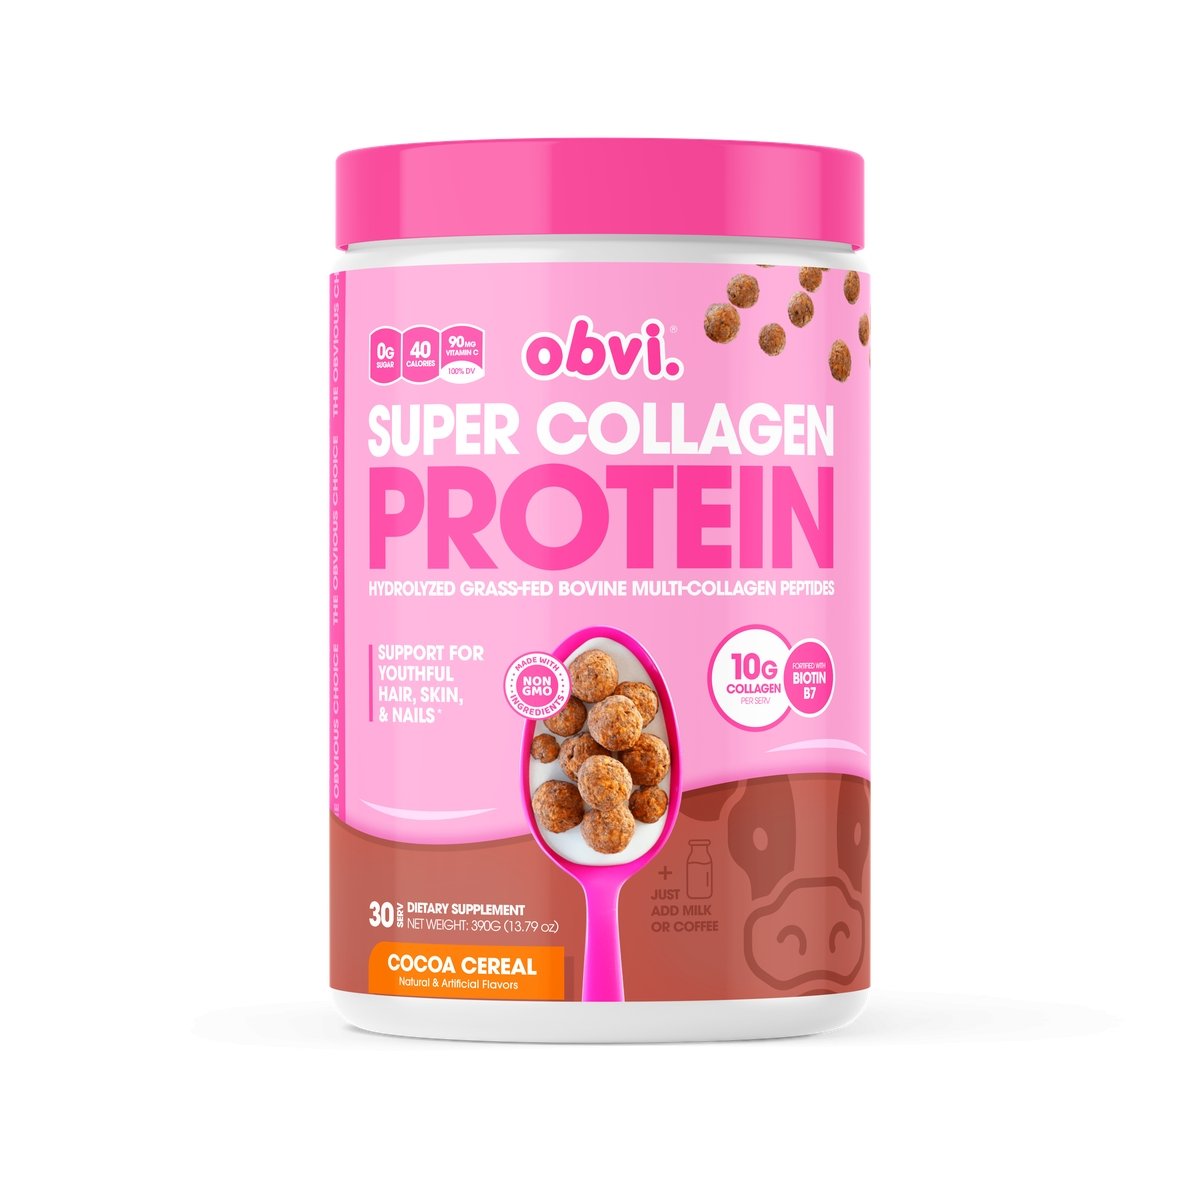 Collection Obvi Super Collagen Protein 30 Serv/10G Collagen per serv